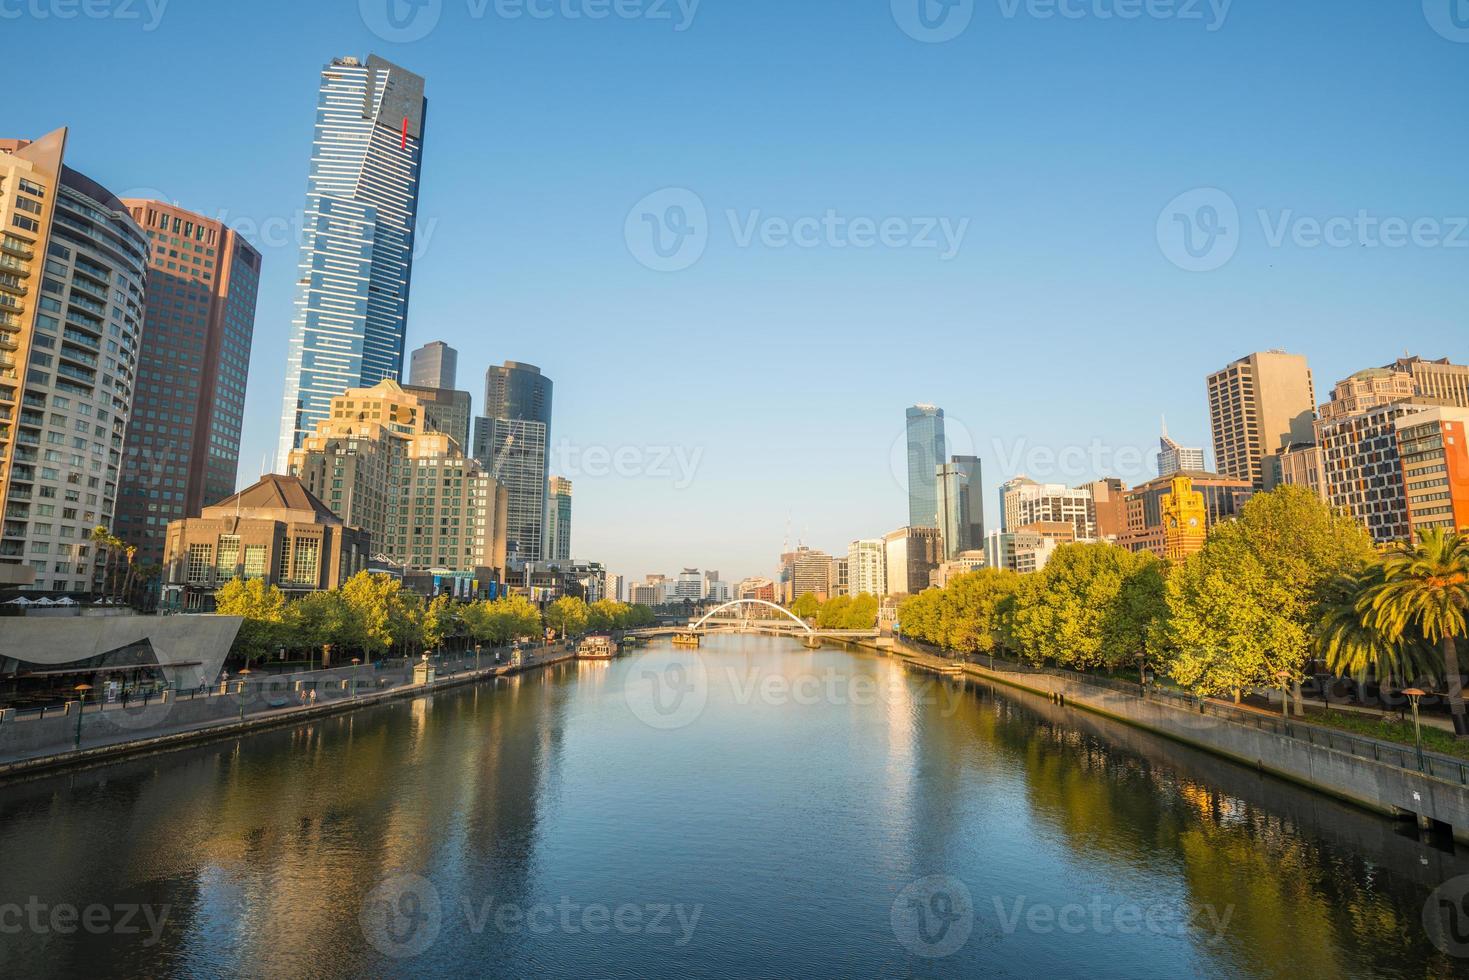 stadsgezicht van de stad melbourne met de yarra rivier die door de stad loopt. melbourne city cbd een van de meest leefbare steden ter wereld van australië. foto